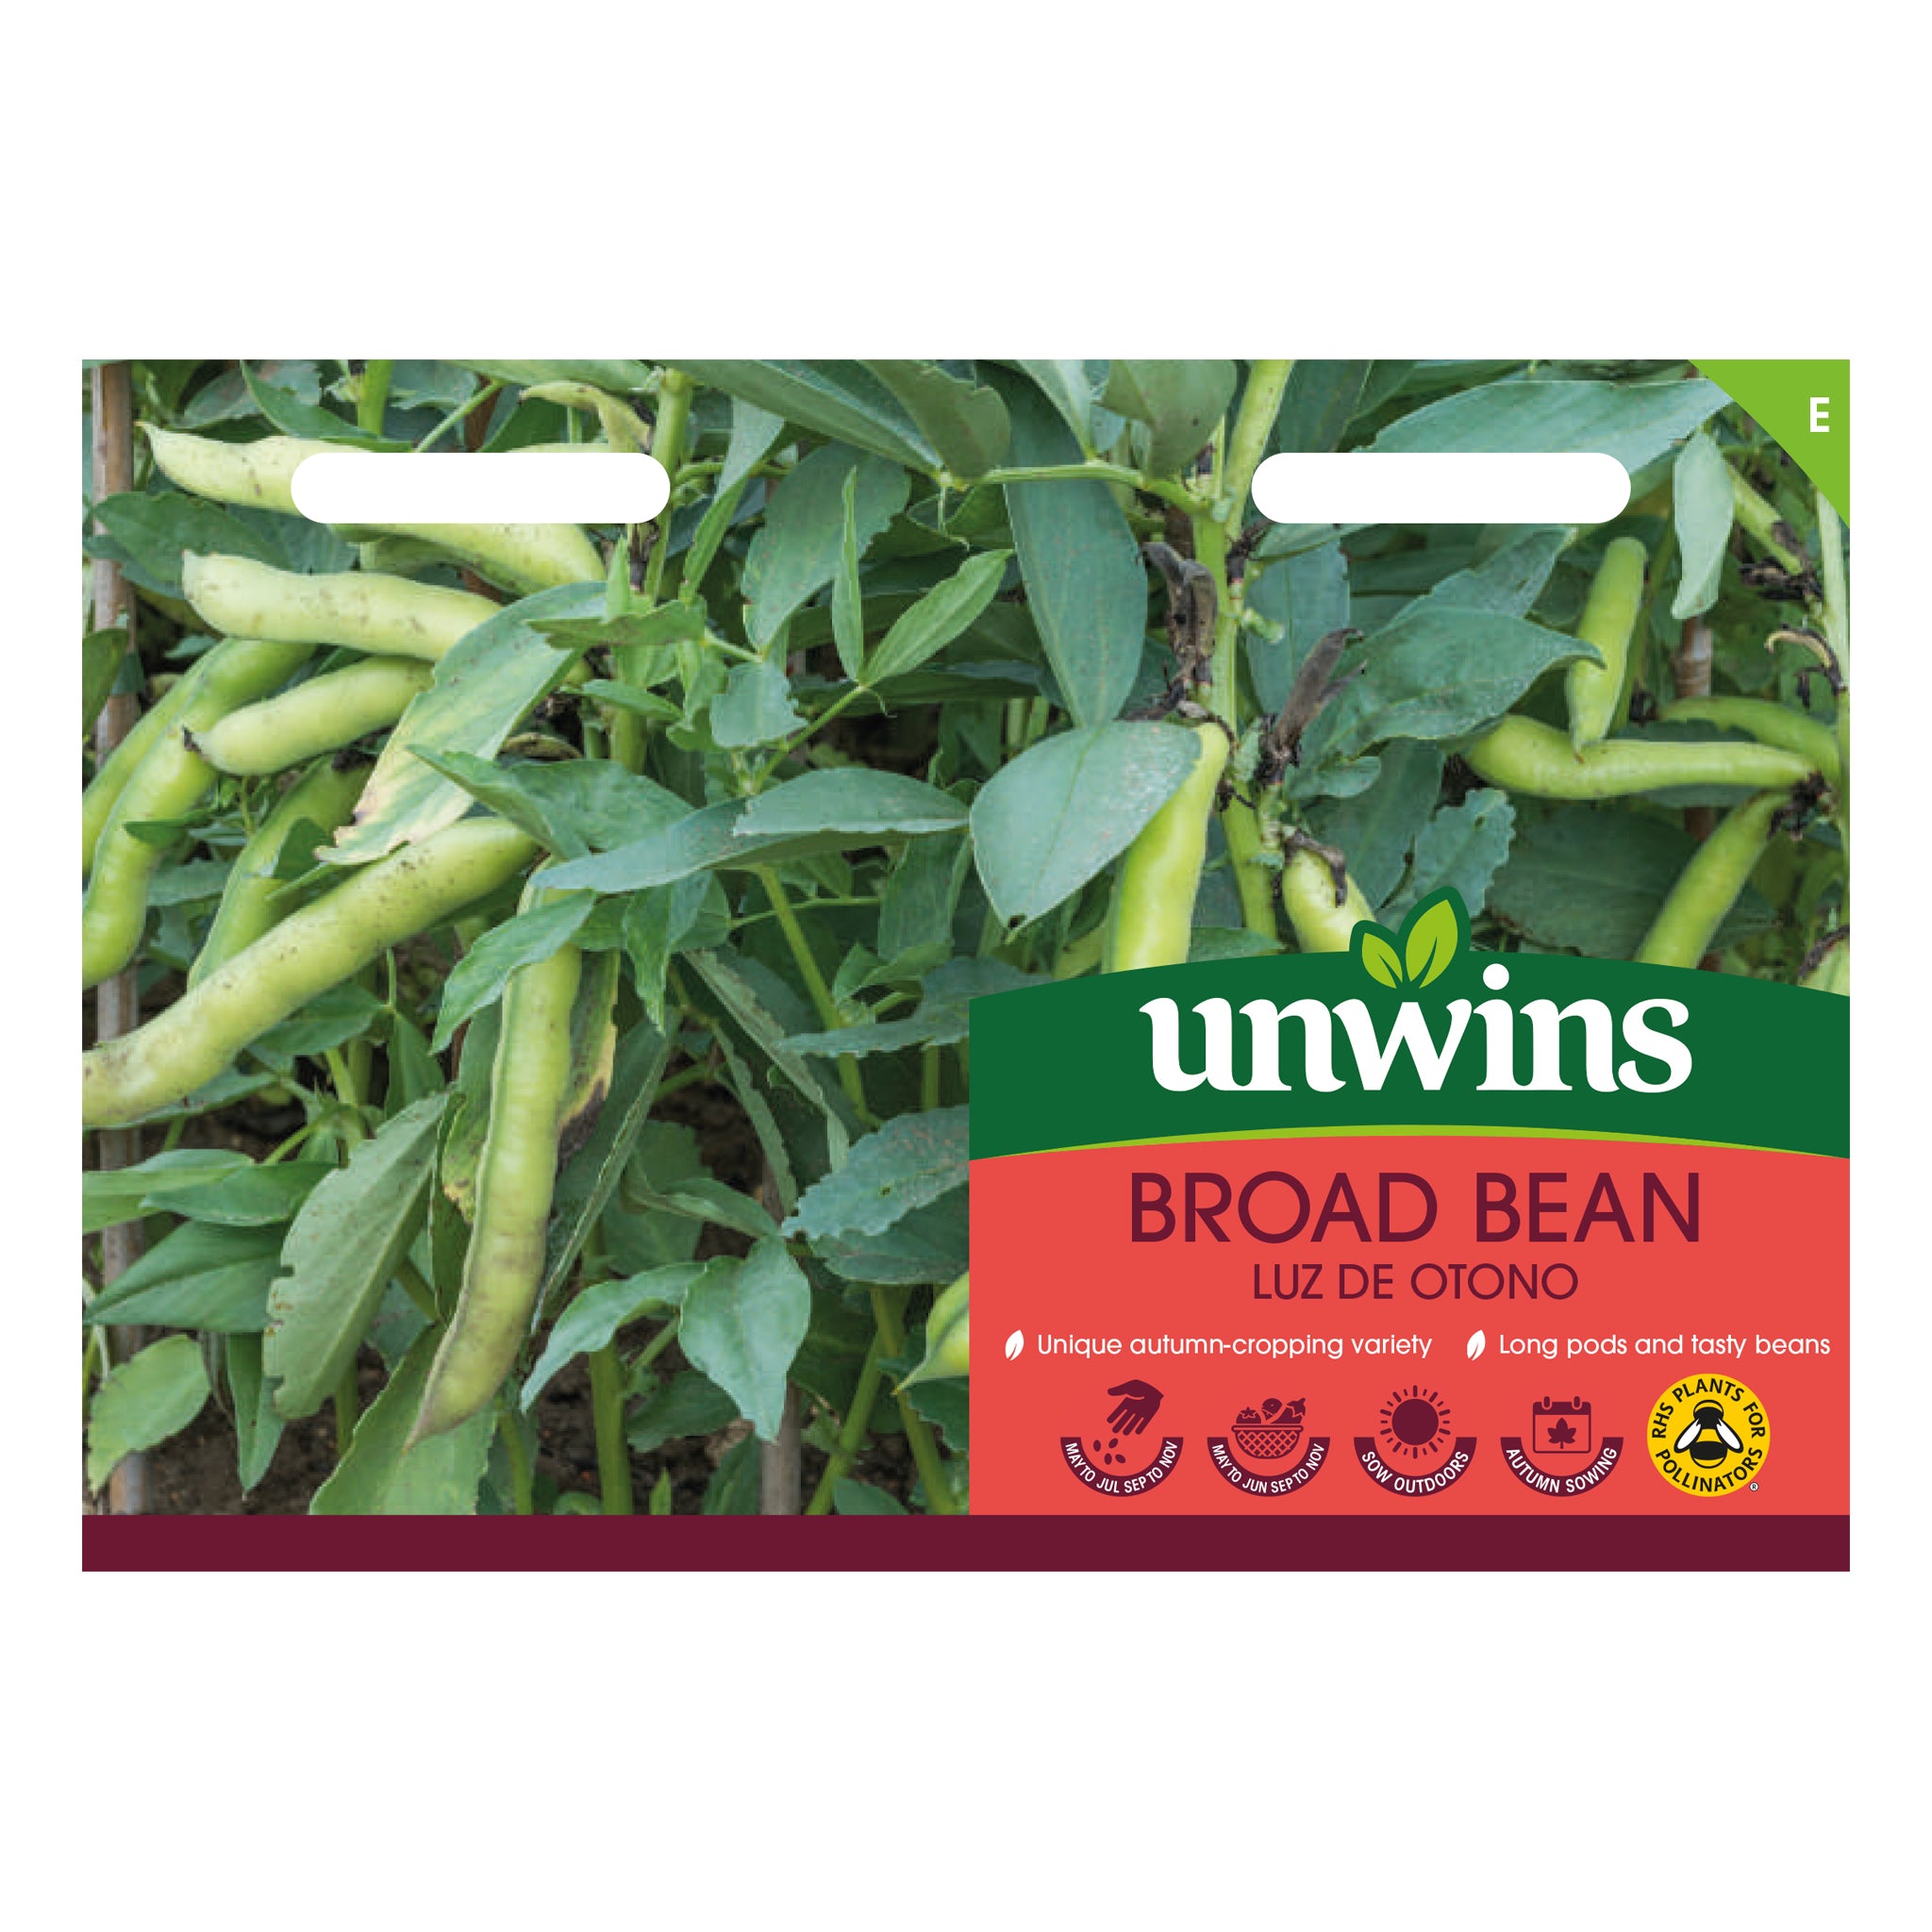 Unwins Broad Bean Luz de Otono Seeds